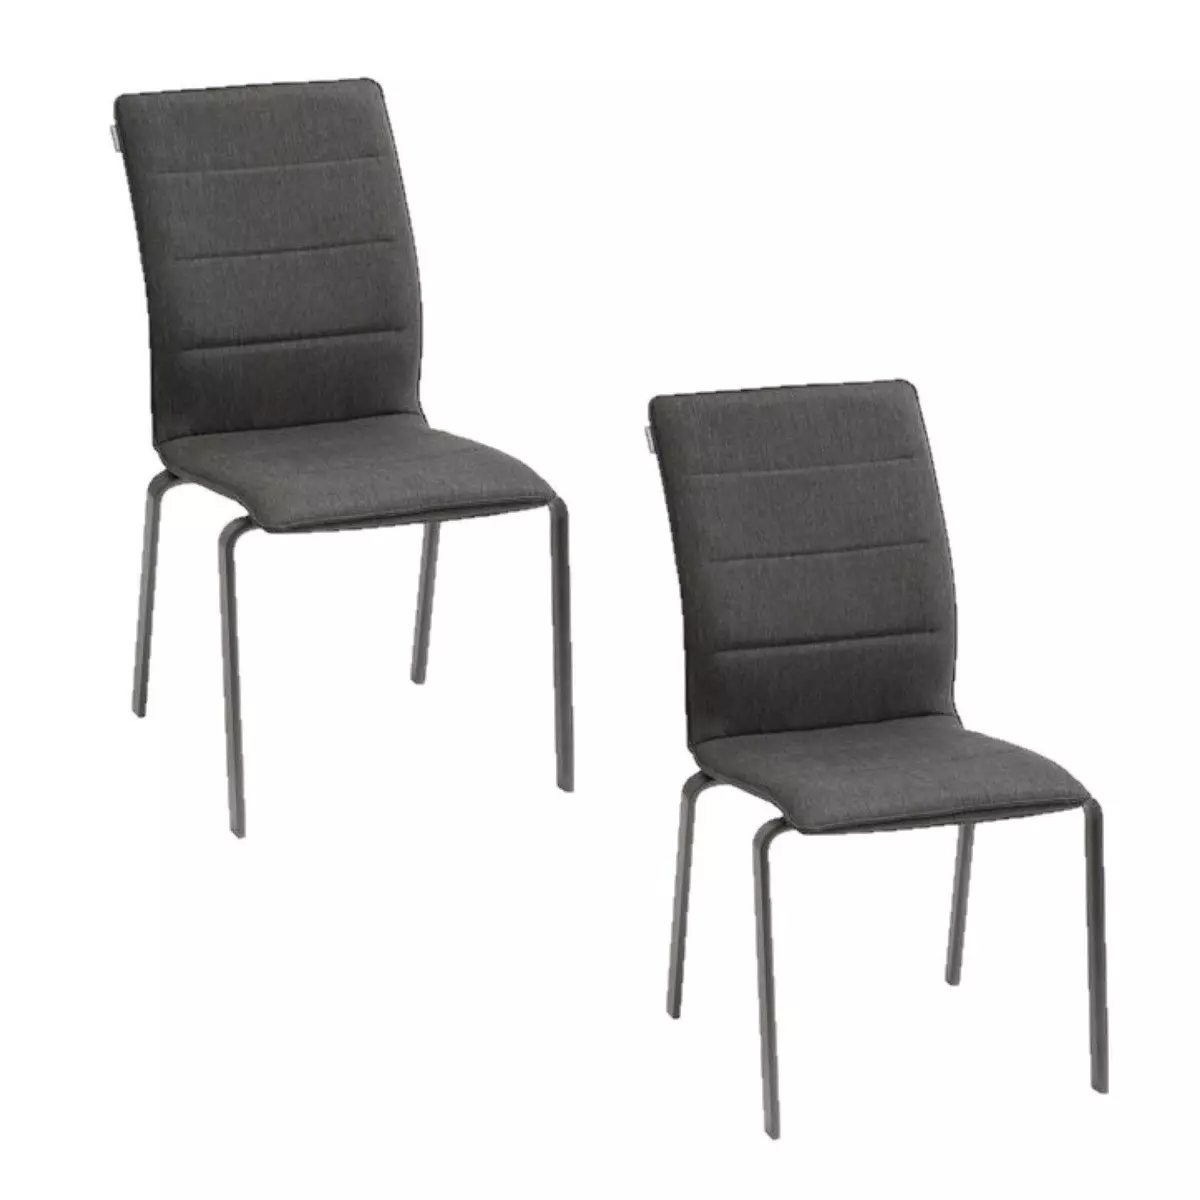 HESPERIDE Lot de 2 chaises empilables Diese en aluminium et polytexaline - Anthracite et graphite